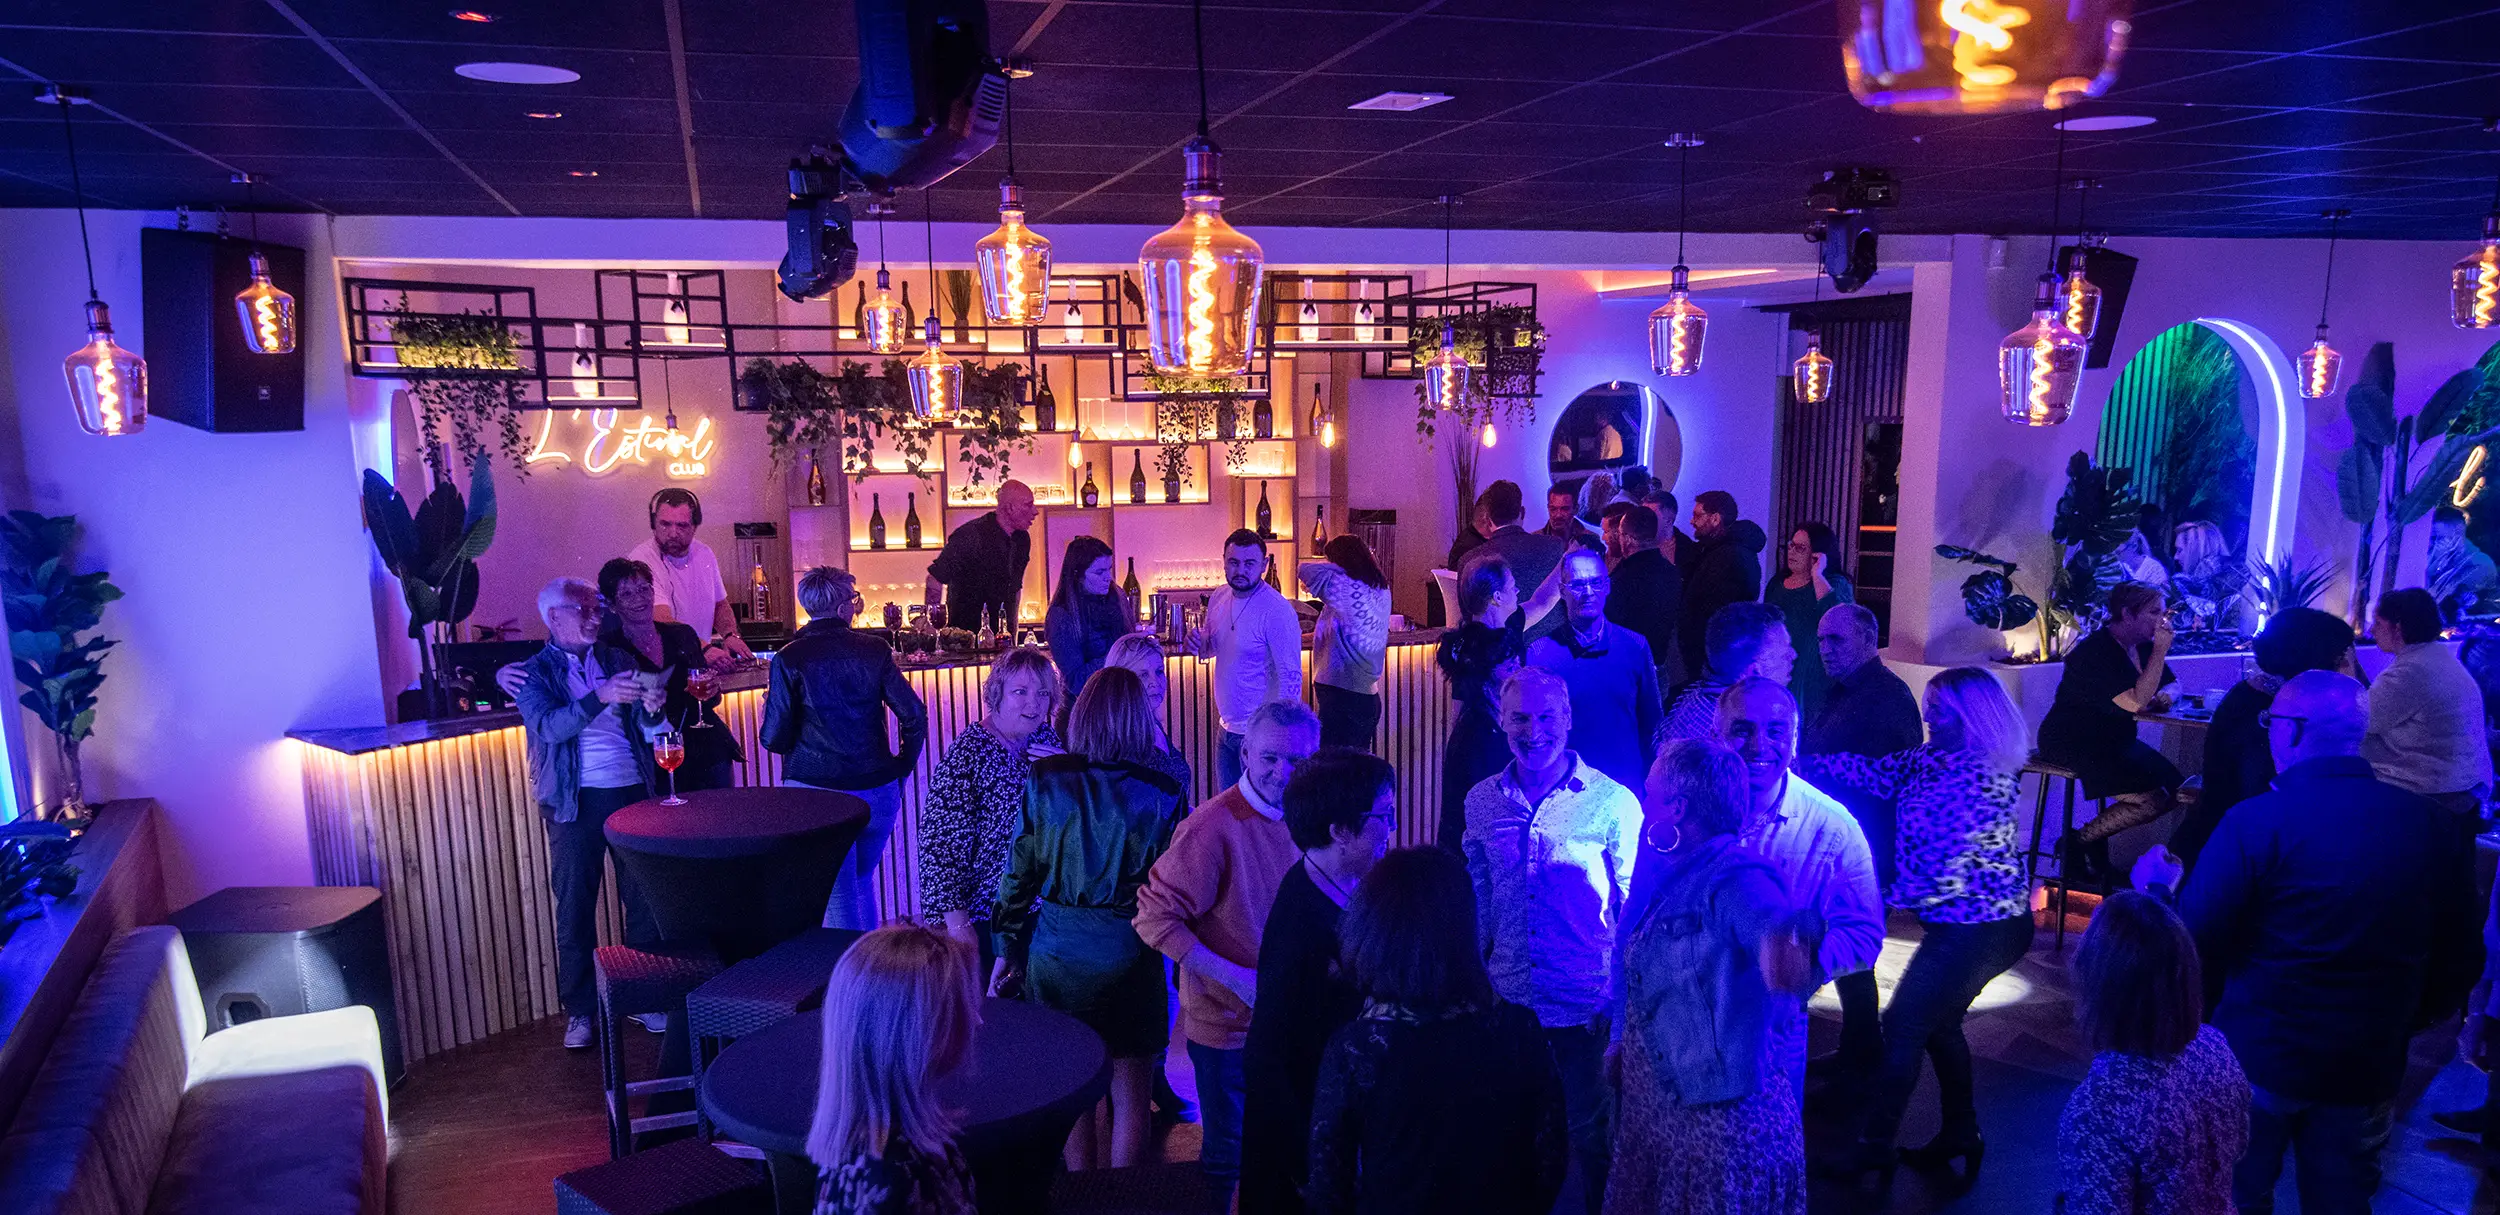 Salle dansante de l'Estival club. C'est un restaurant et bar en Seine-Maritime aménagé en son et lumière par le Groupe Silam.